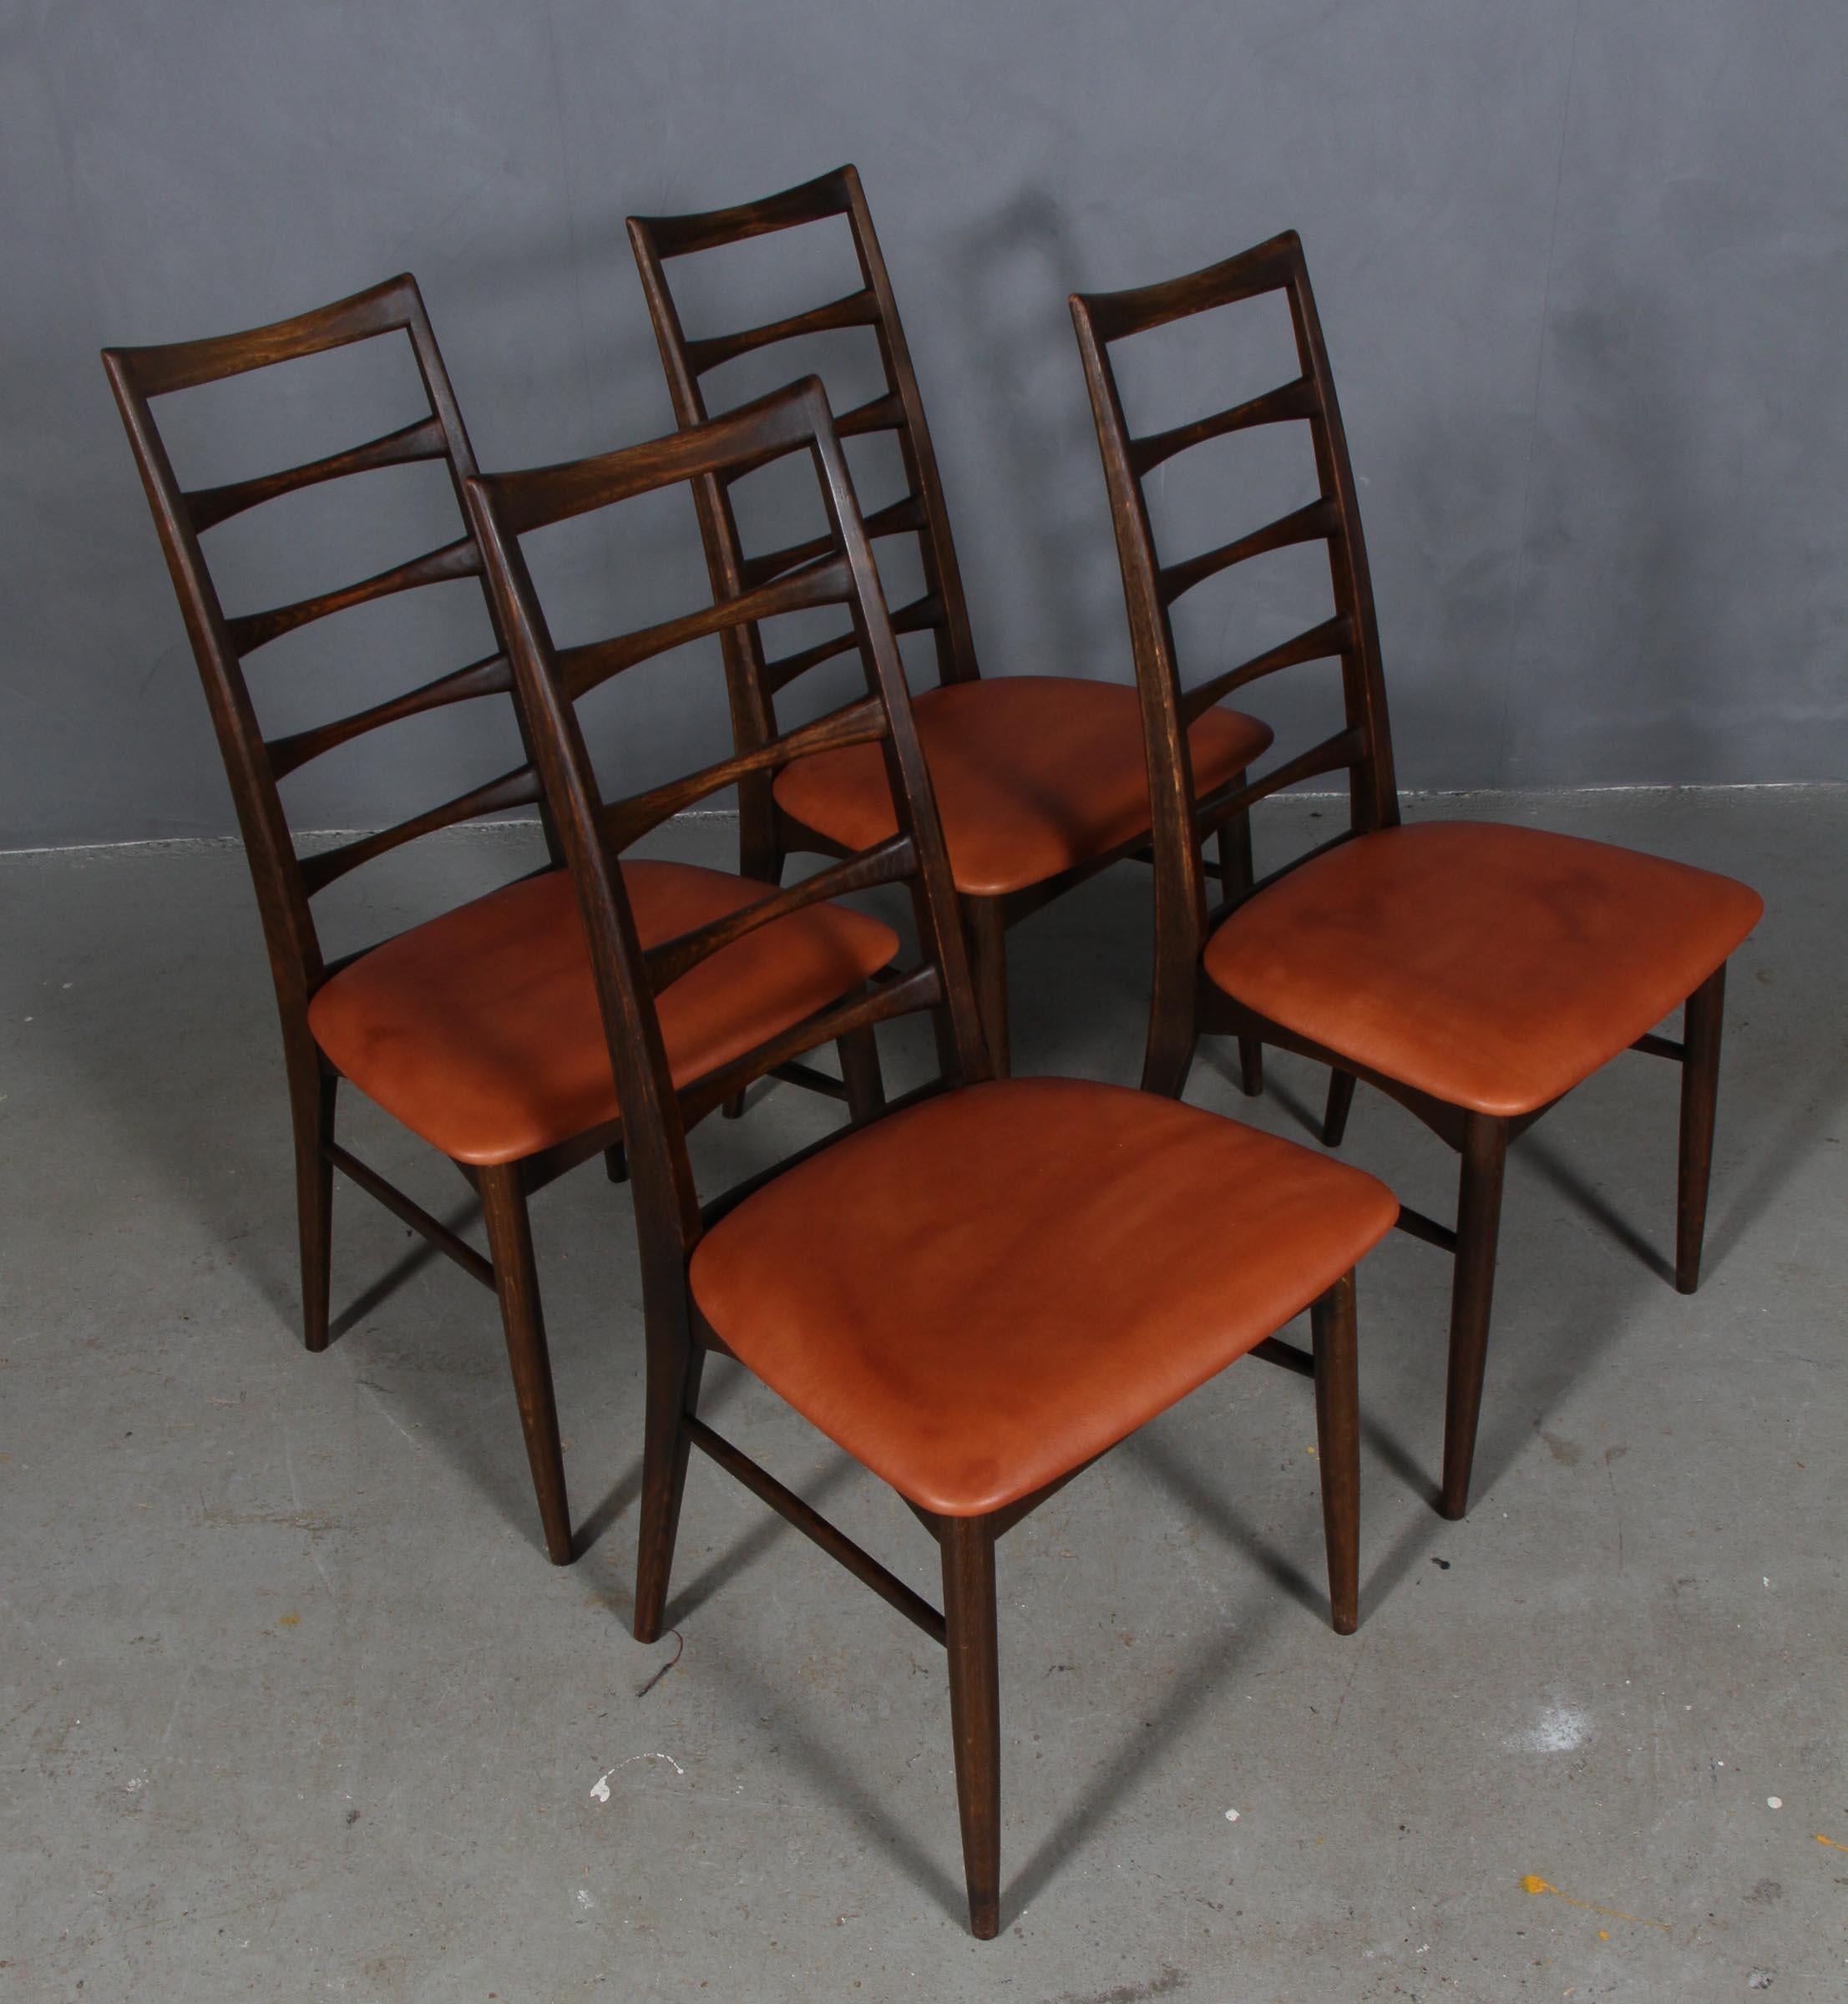 Ensemble de chaises de salle à manger Niels Koefoed en chêne massif fumé.

Nouvelle sellerie en cuir aniline de couleur tannée.

Modèle Lis, fabriqué par Niels Koefoeds Møbelfabrik Hornslet, années 1960.

